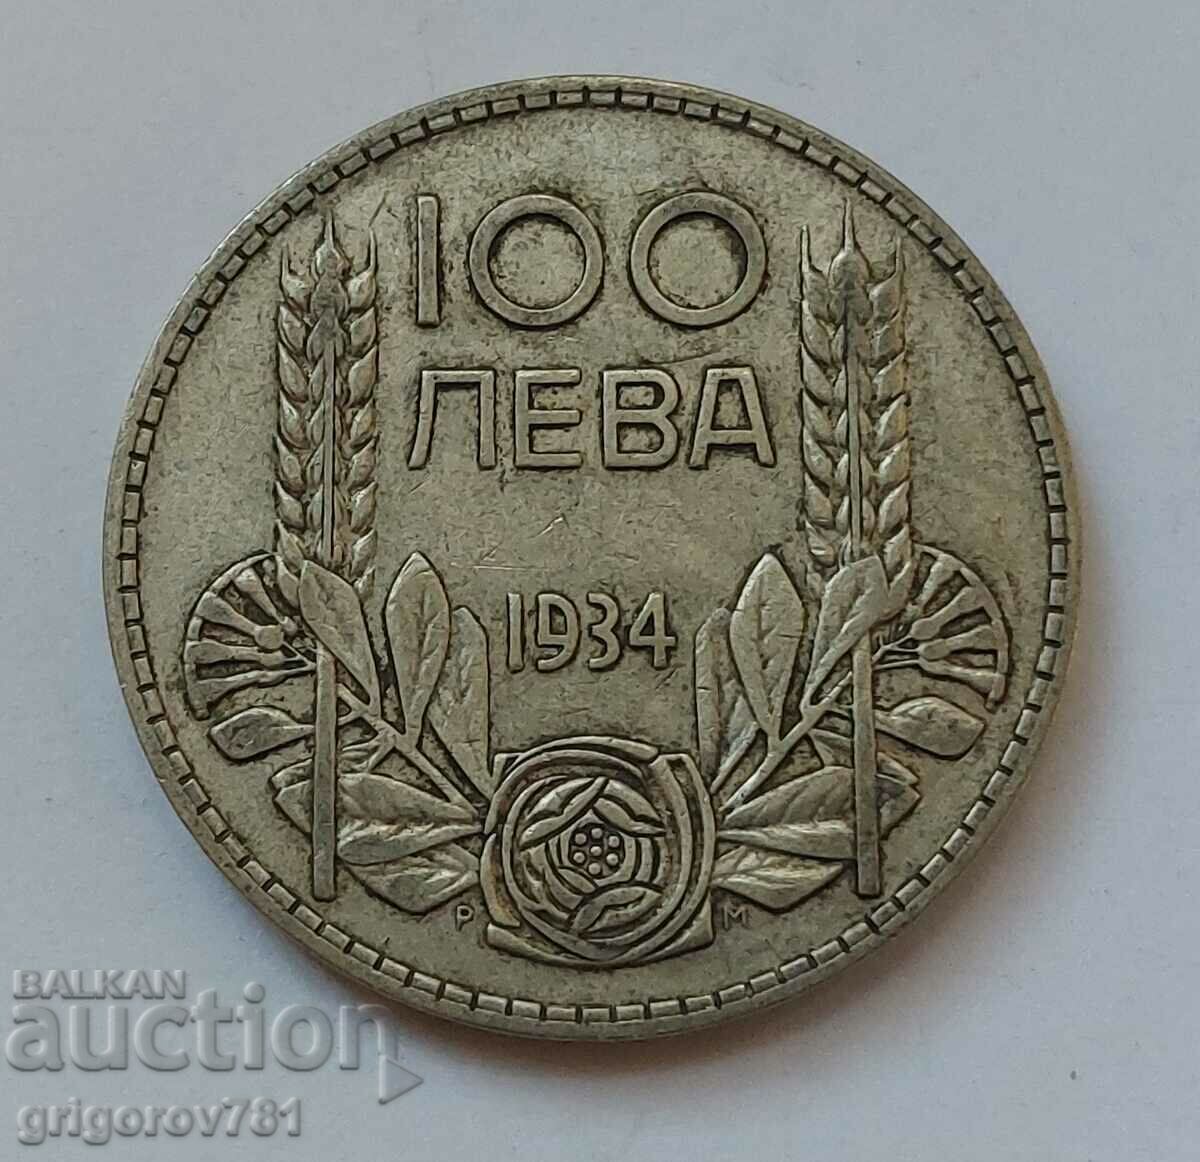 Ασήμι 100 λέβα Βουλγαρία 1934 - ασημένιο νόμισμα #89